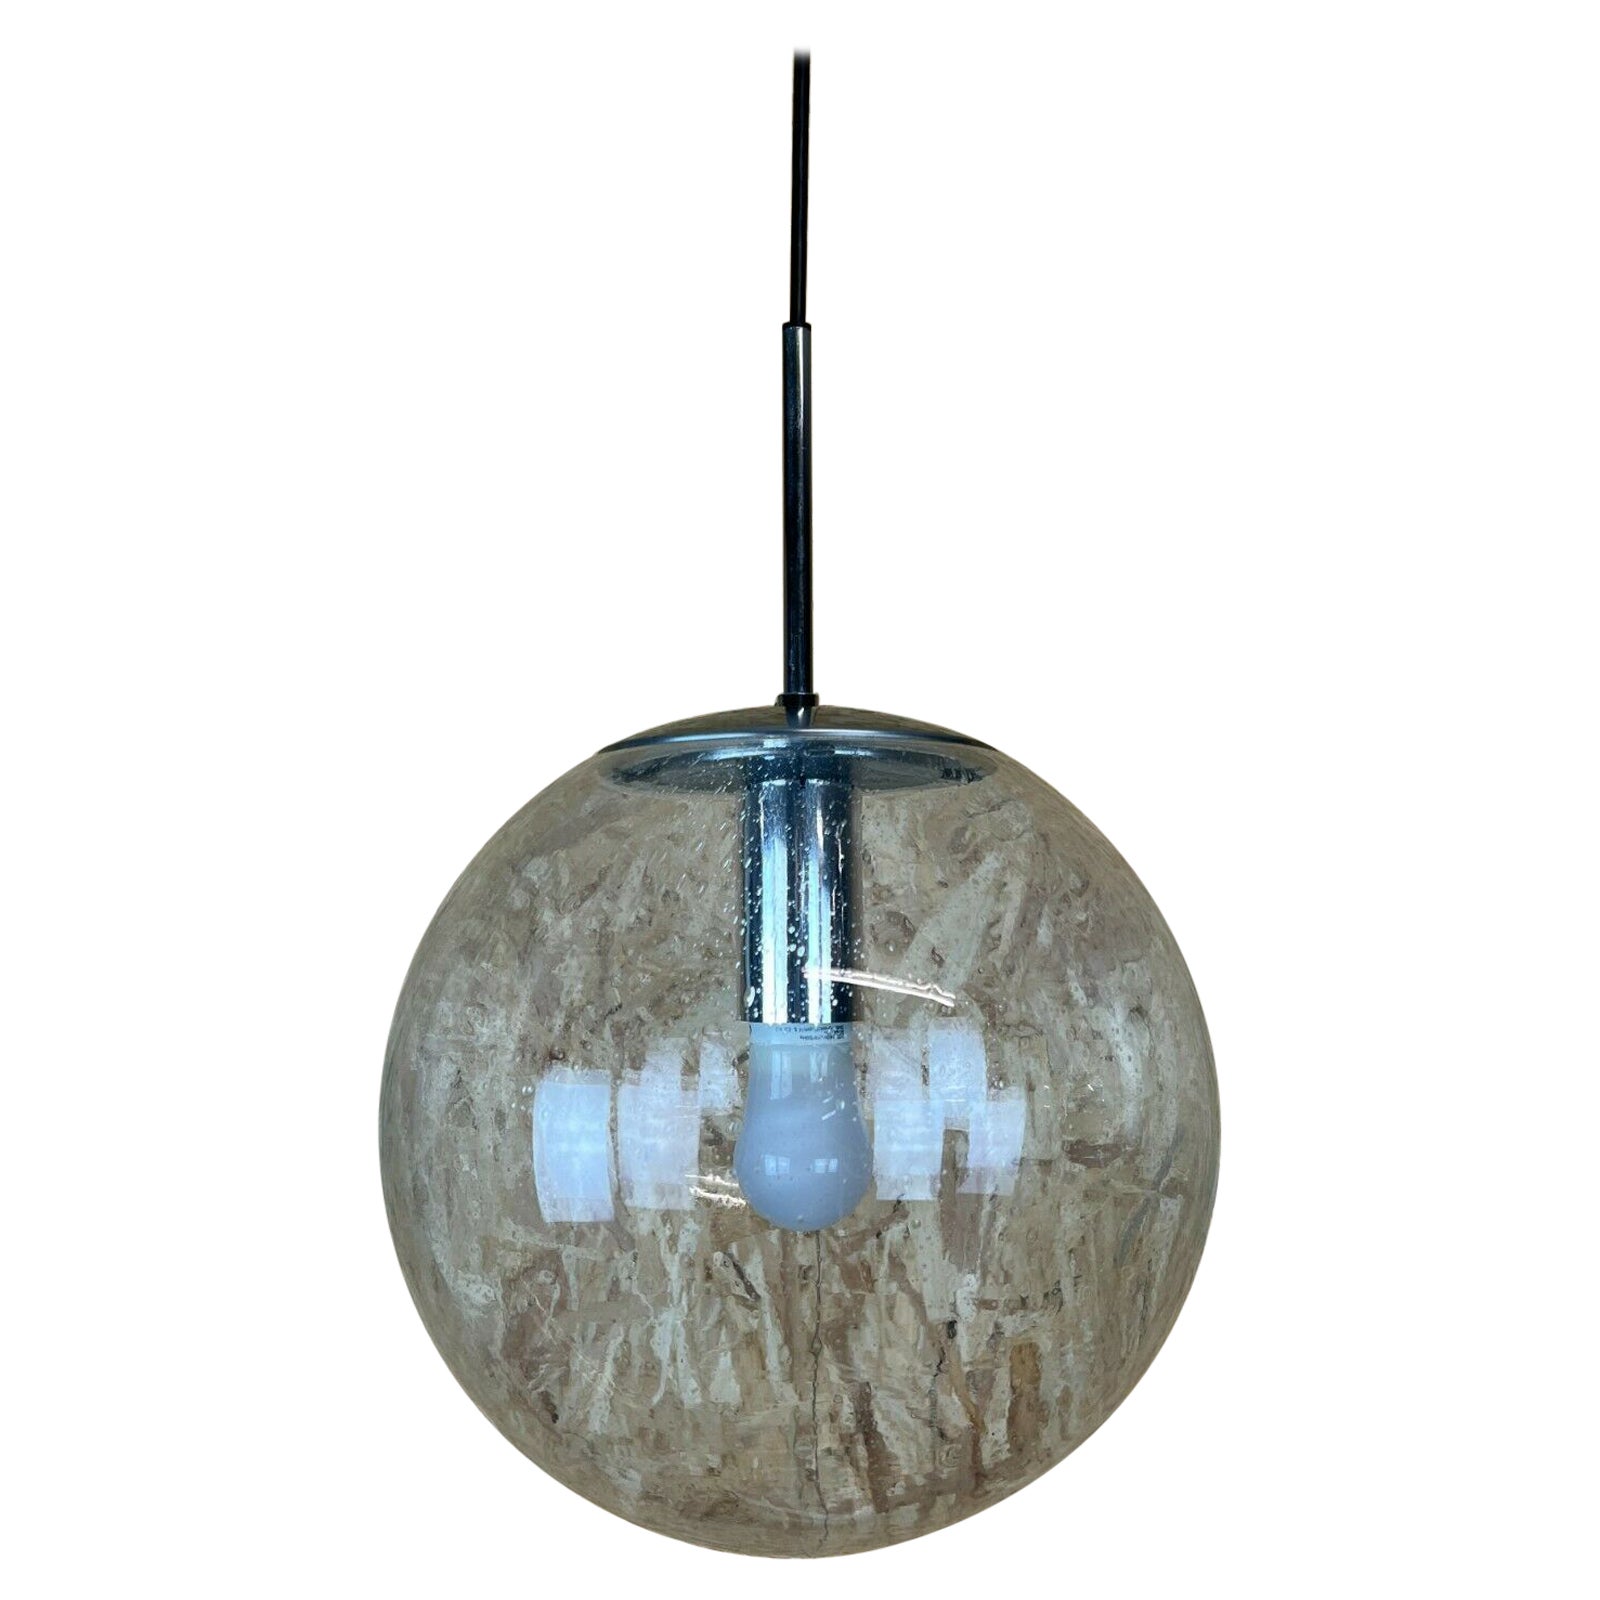 XL 60s 70s Lamp Light Ceiling Lamp Limburg Spherical Lamp Ball Design